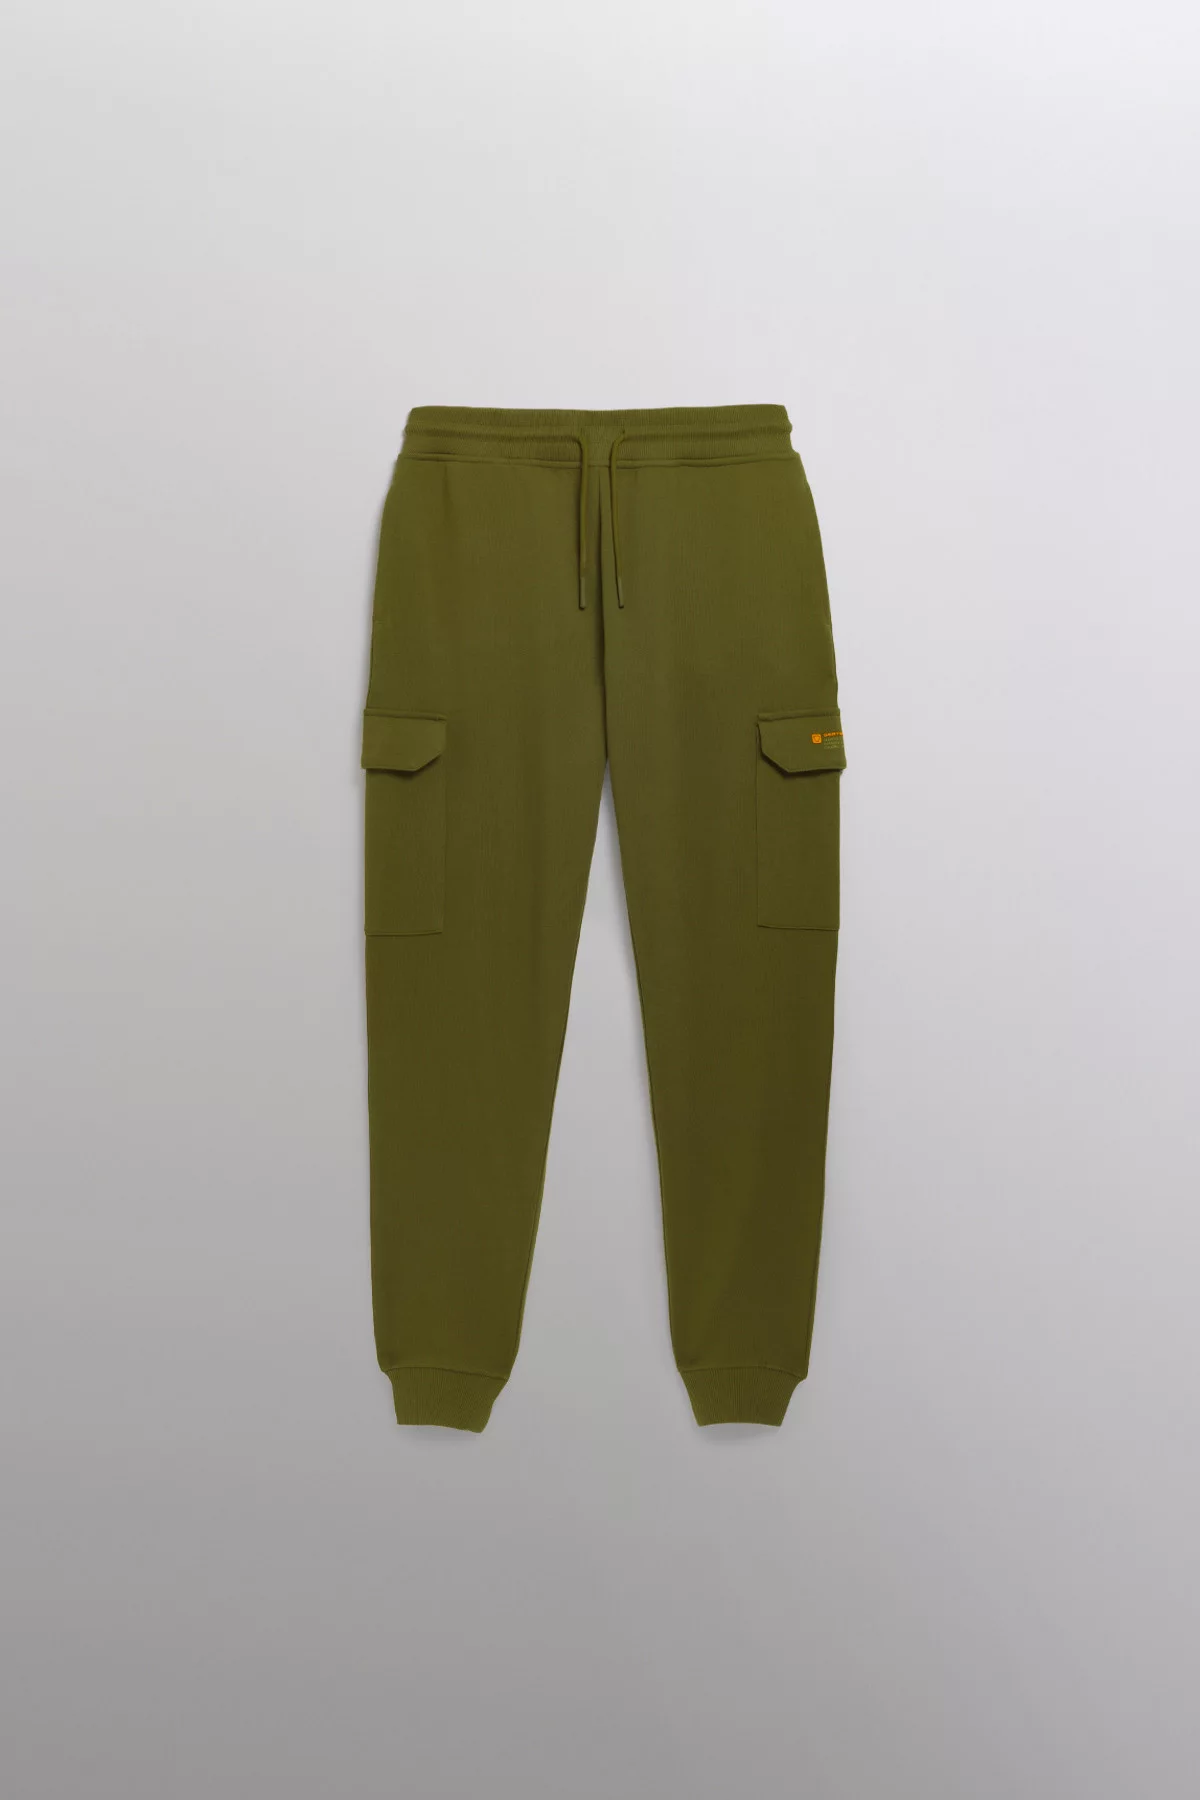 Mario unisex cargo pockets jogging pants